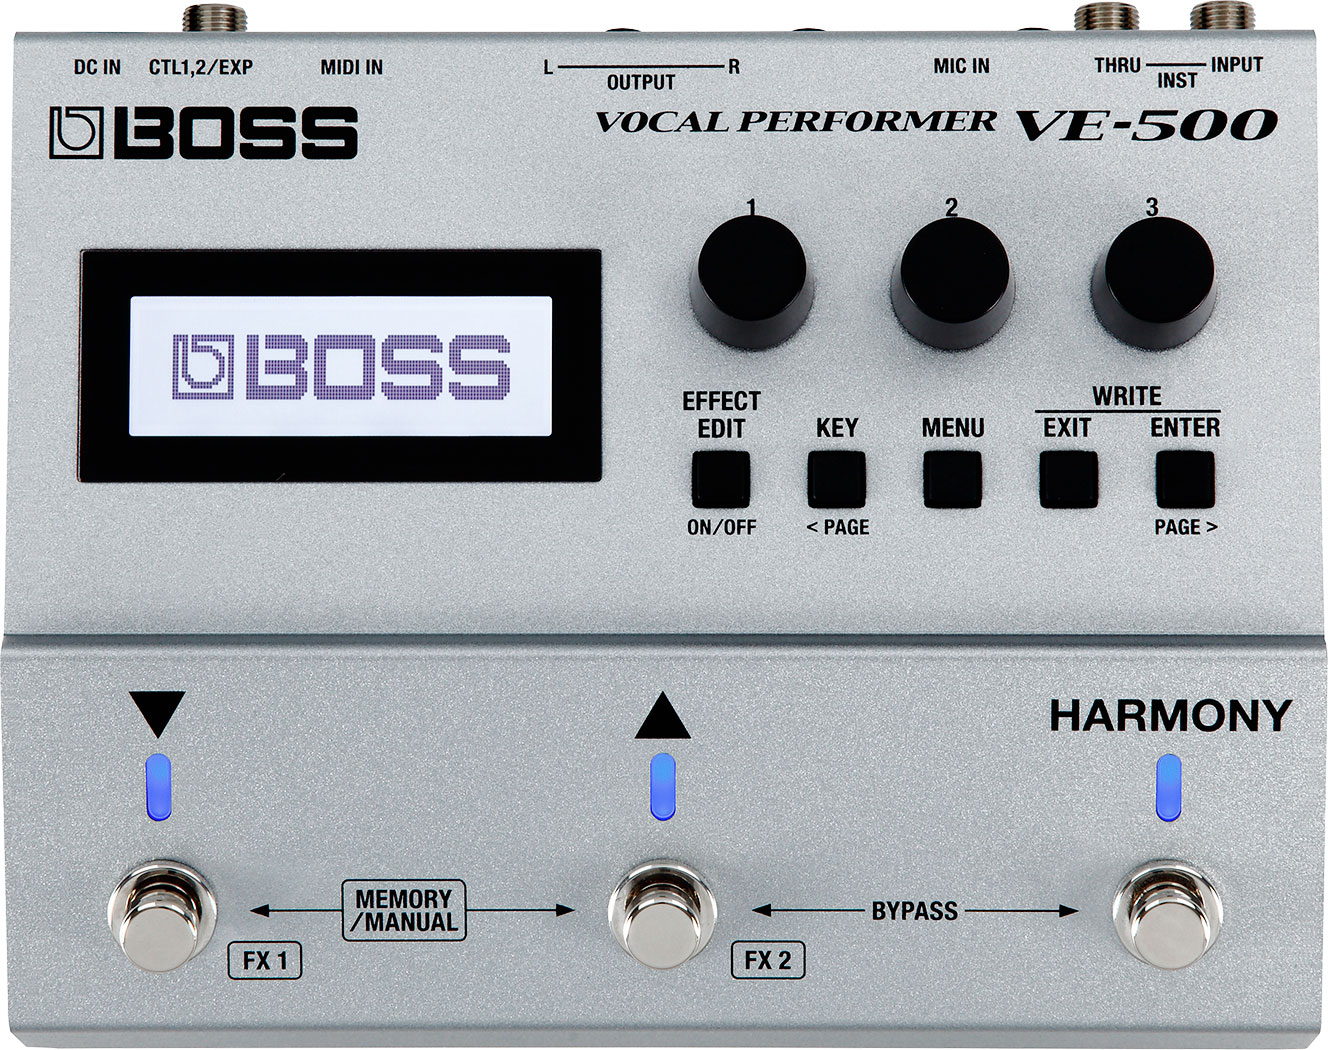 BOSS - VE-500 | Vocal Performer